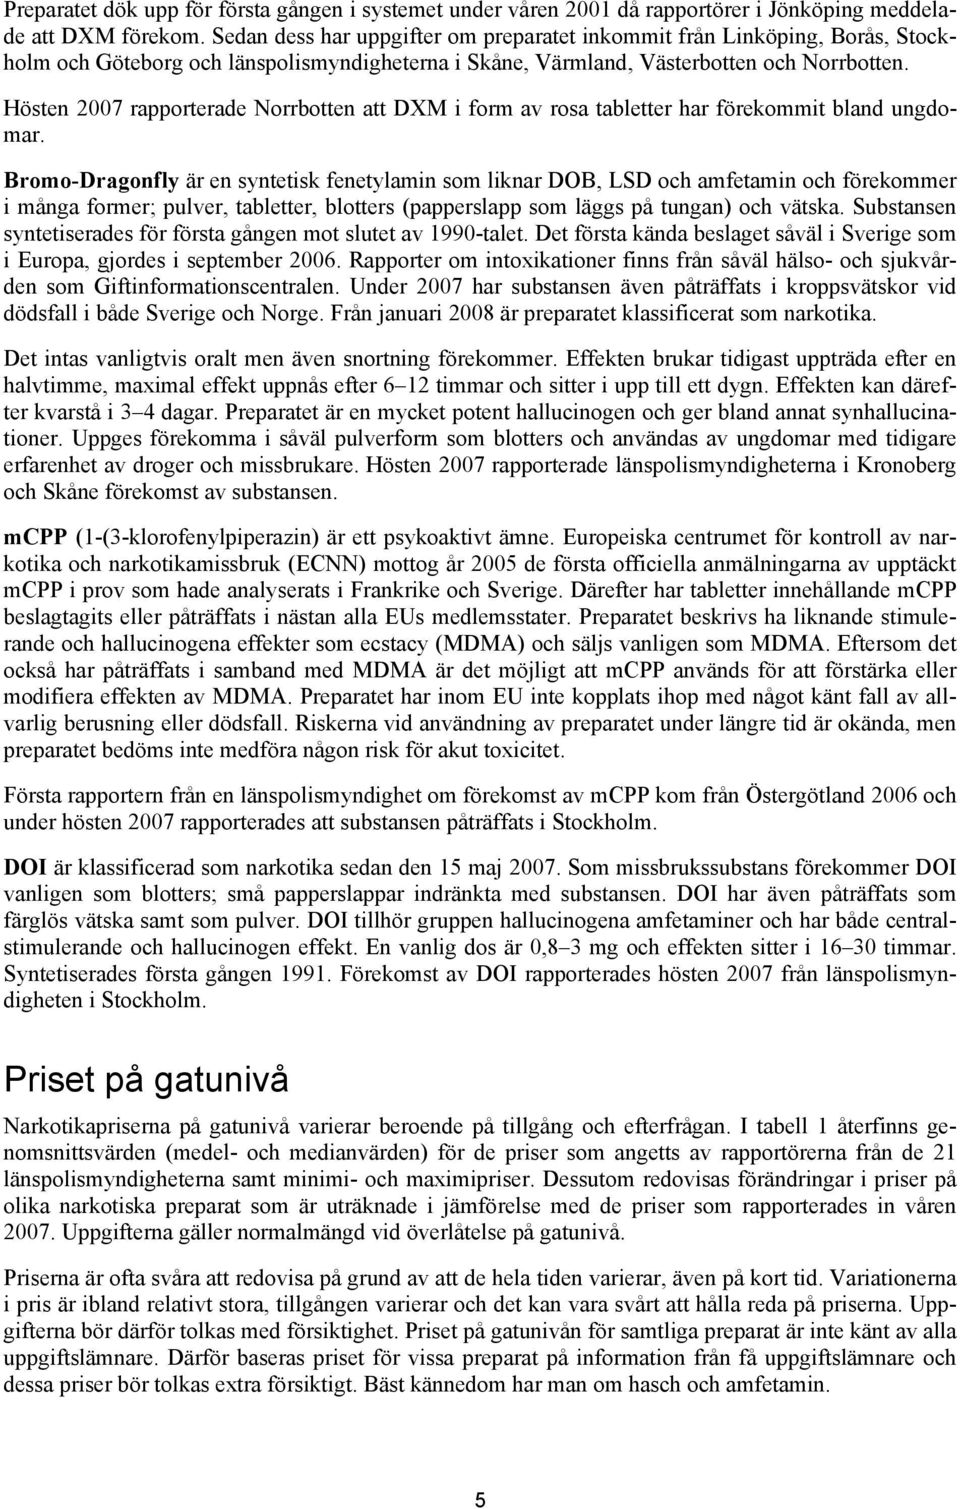 Hösten 2007 rapporterade Norrbotten att DXM i form av rosa tabletter har förekommit bland ungdomar.